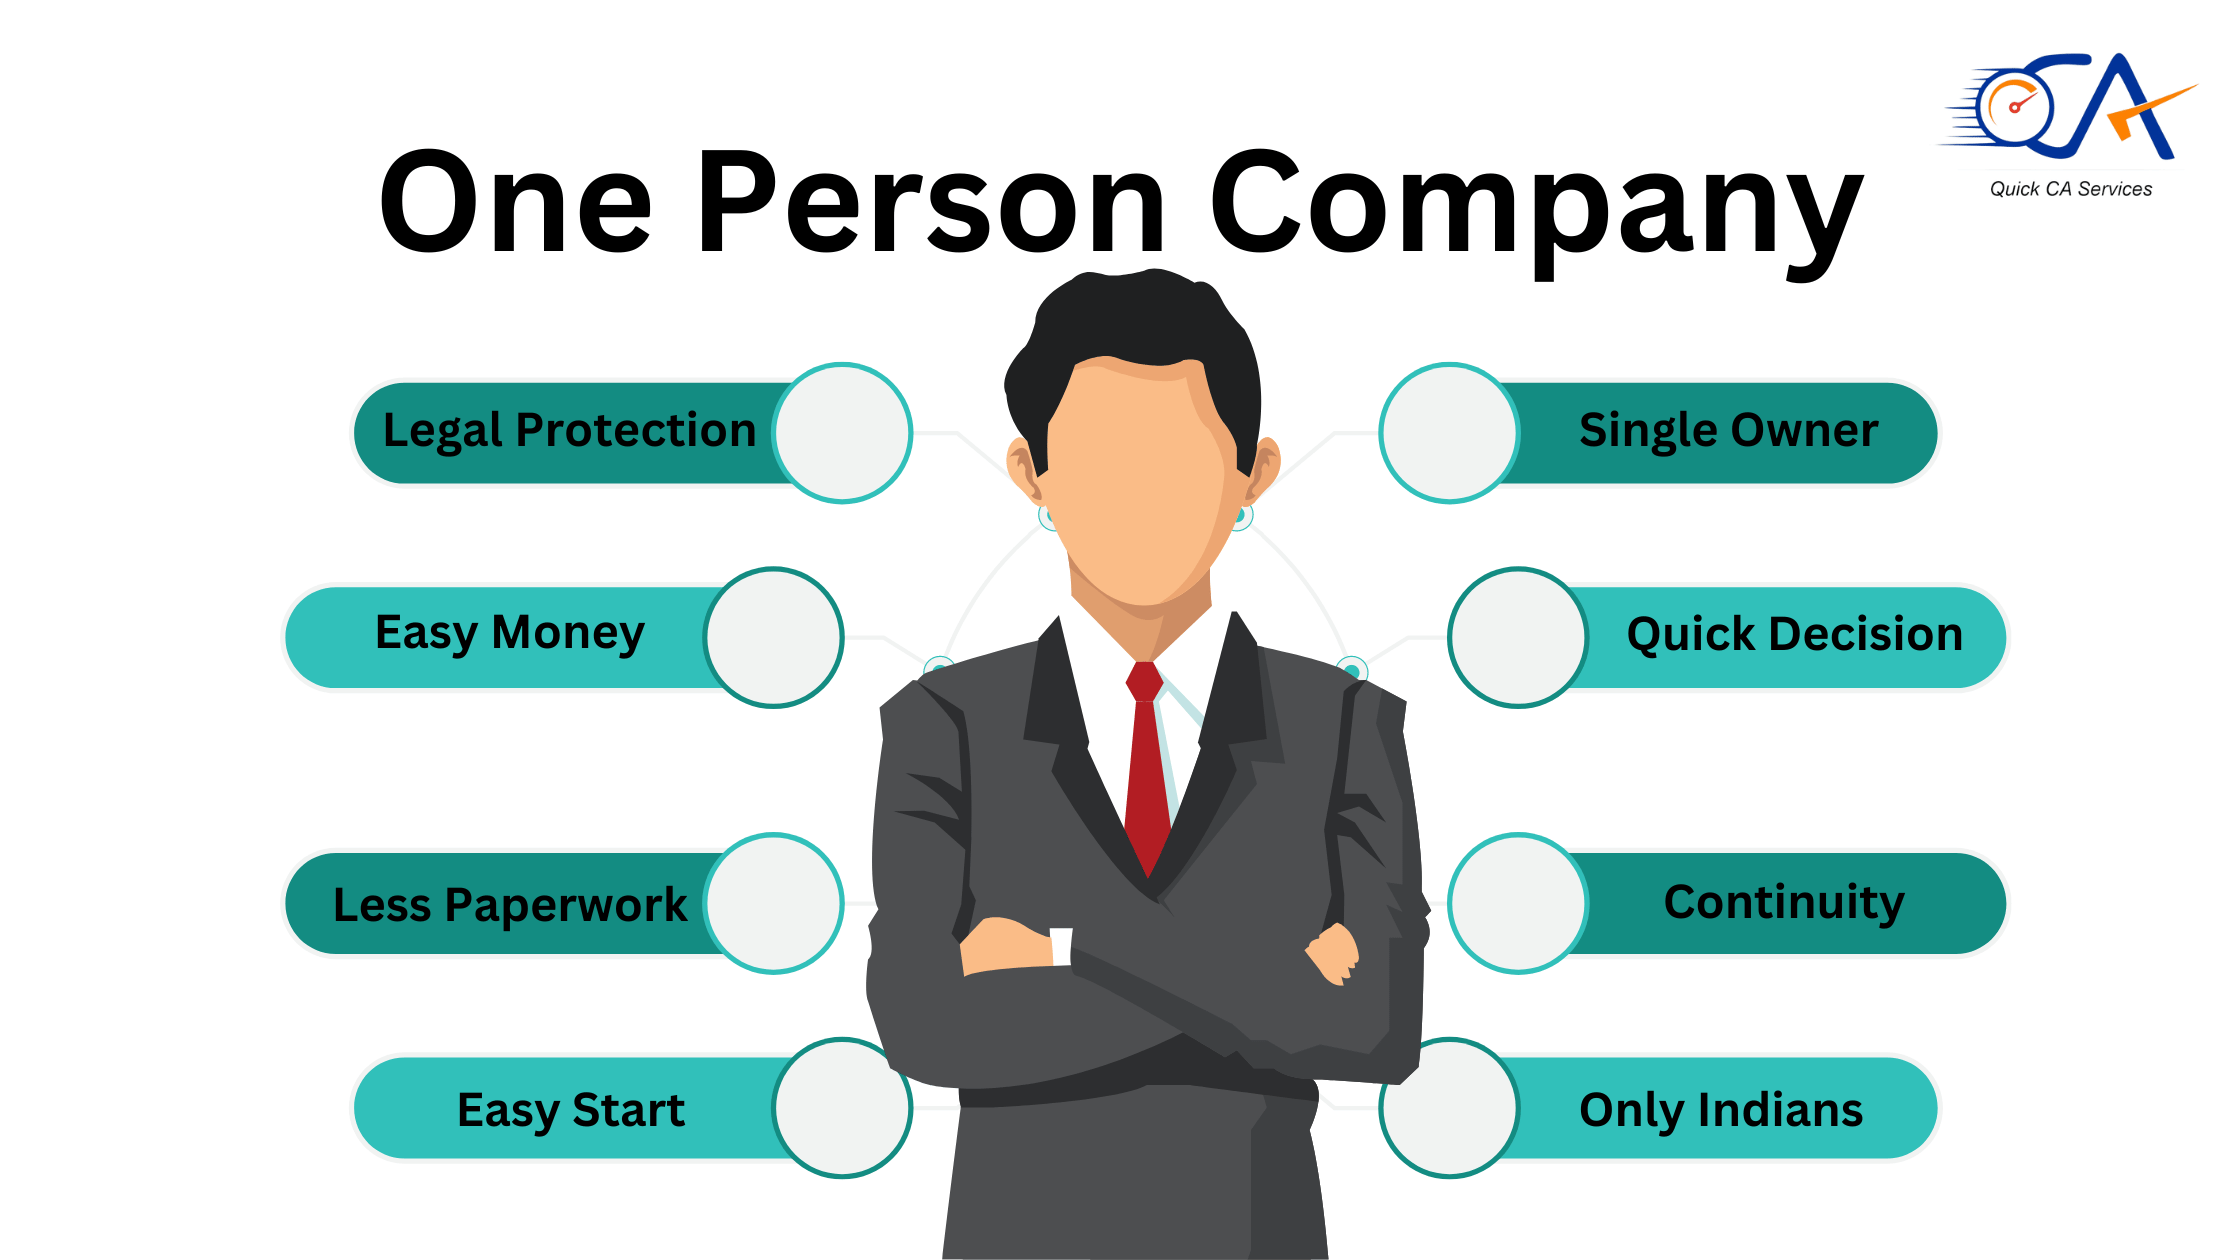 One Person Company - Quick CA Services